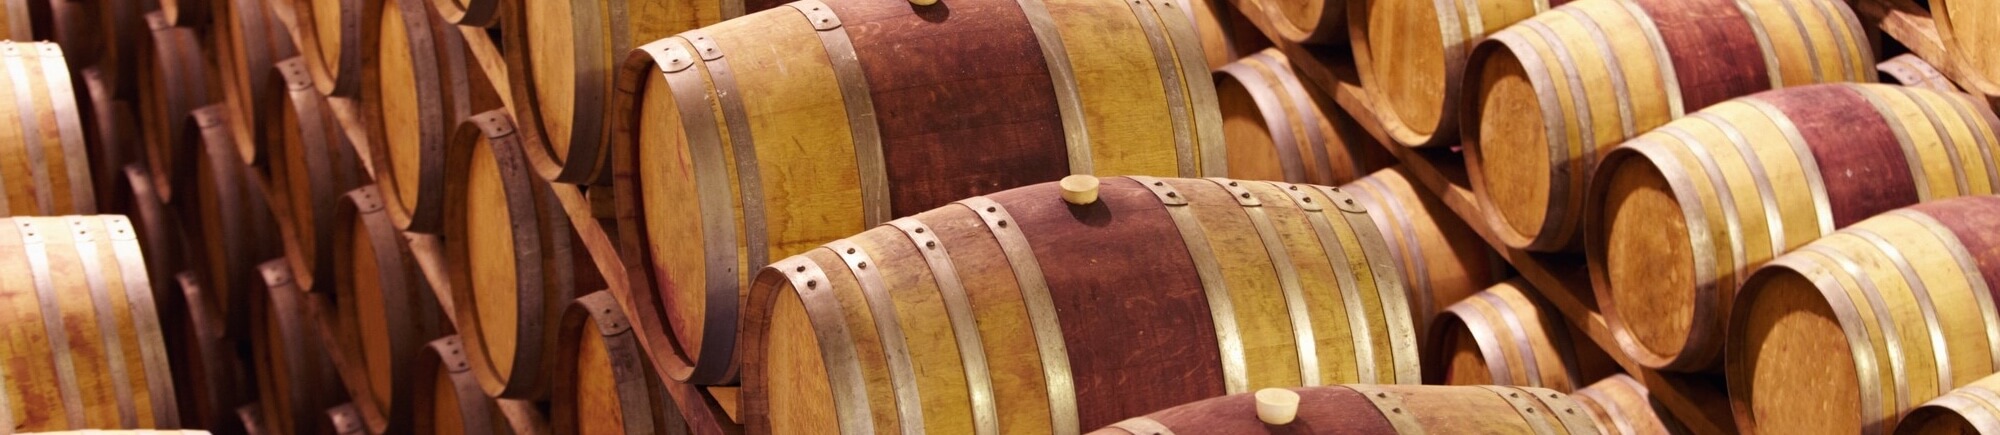 Sistema de filtragem de vinho